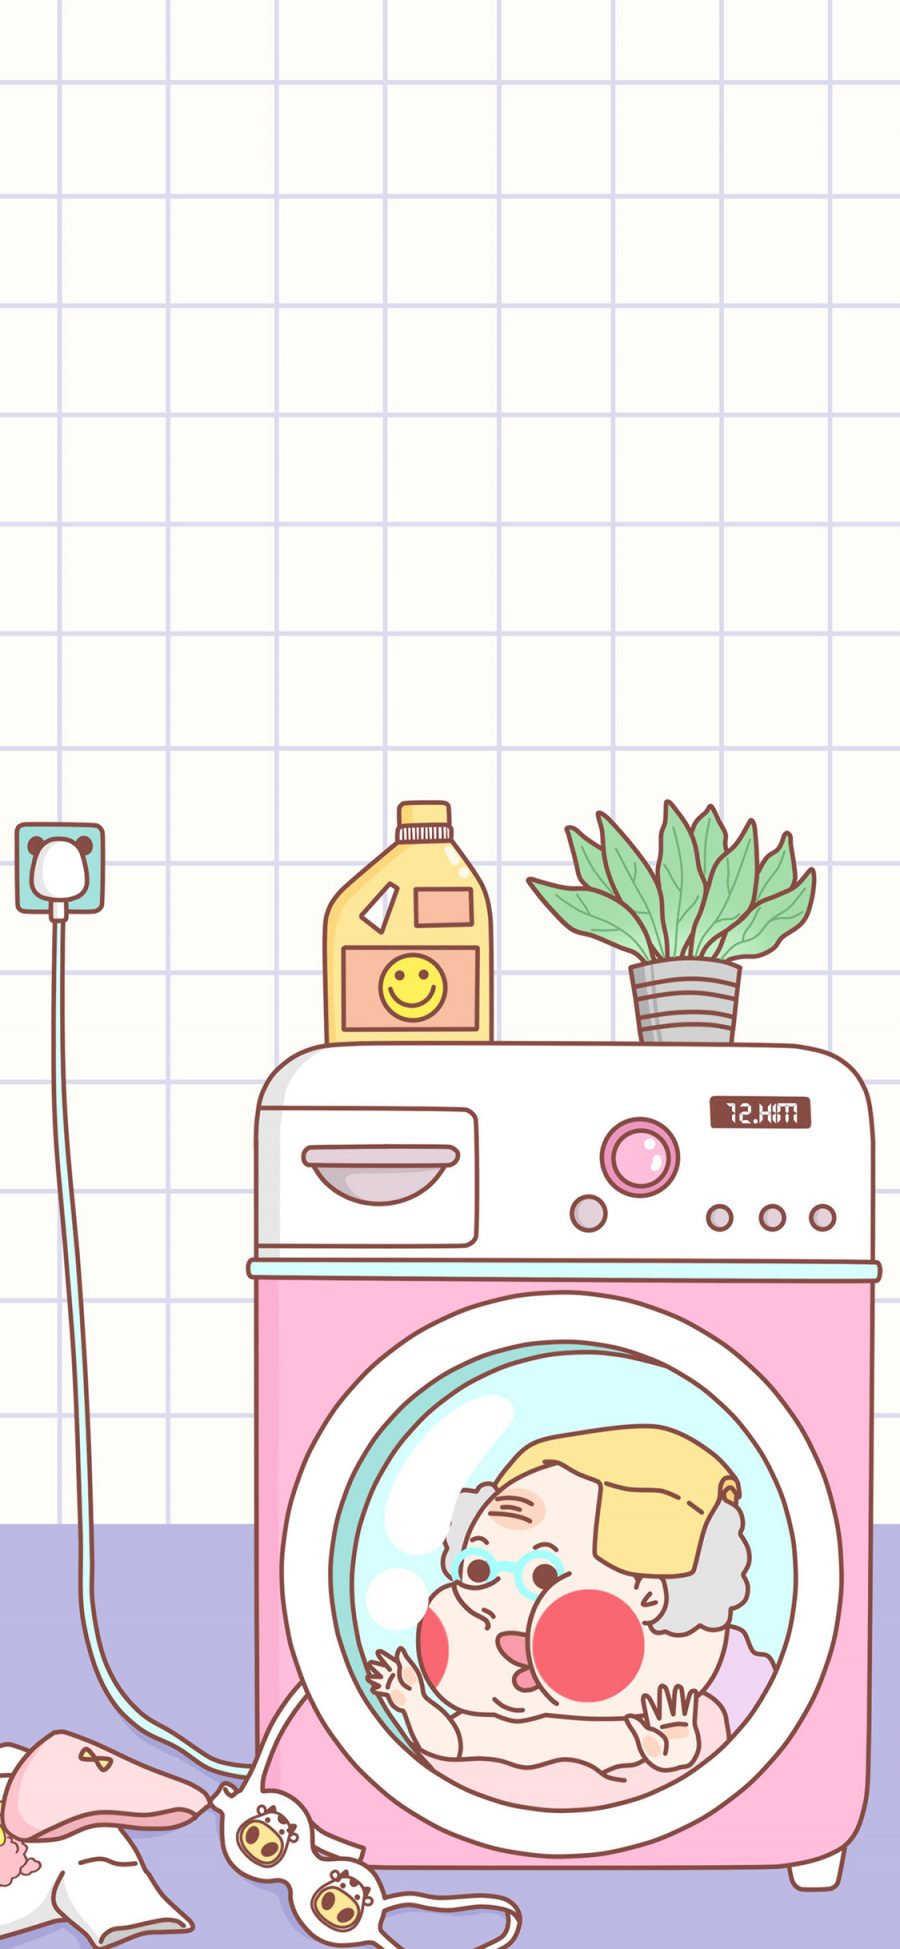 [2436×1125]萌咔便利店 洗衣机 老头 卡通 苹果手机动漫壁纸图片